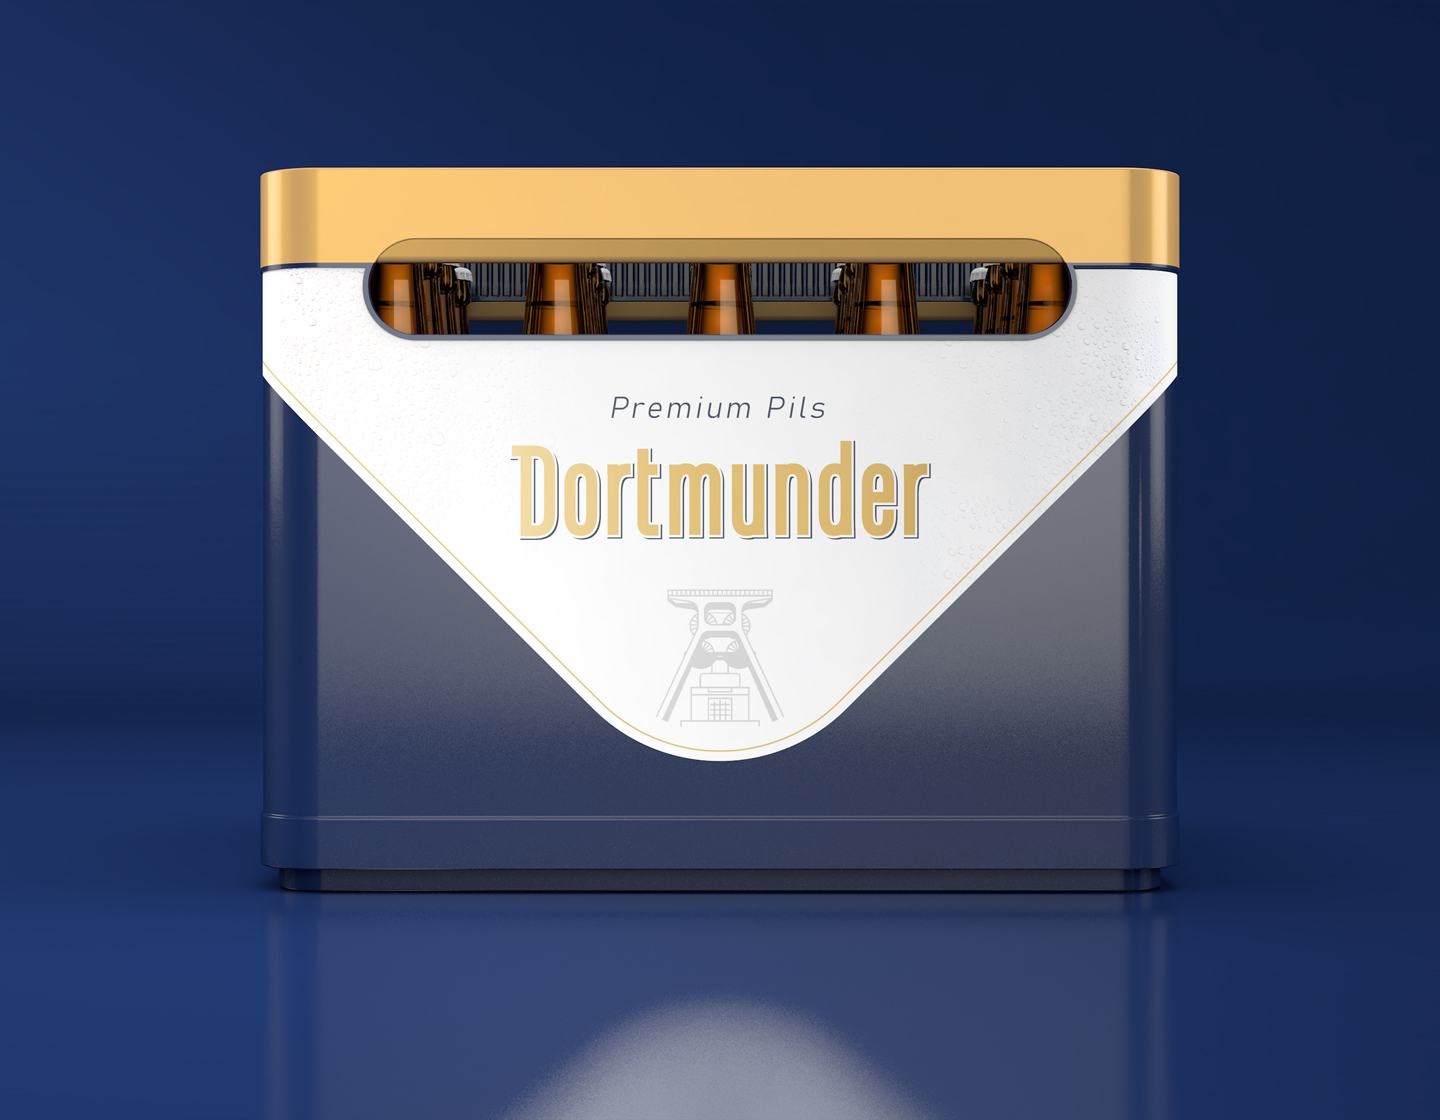 Dortmunder crate packaging